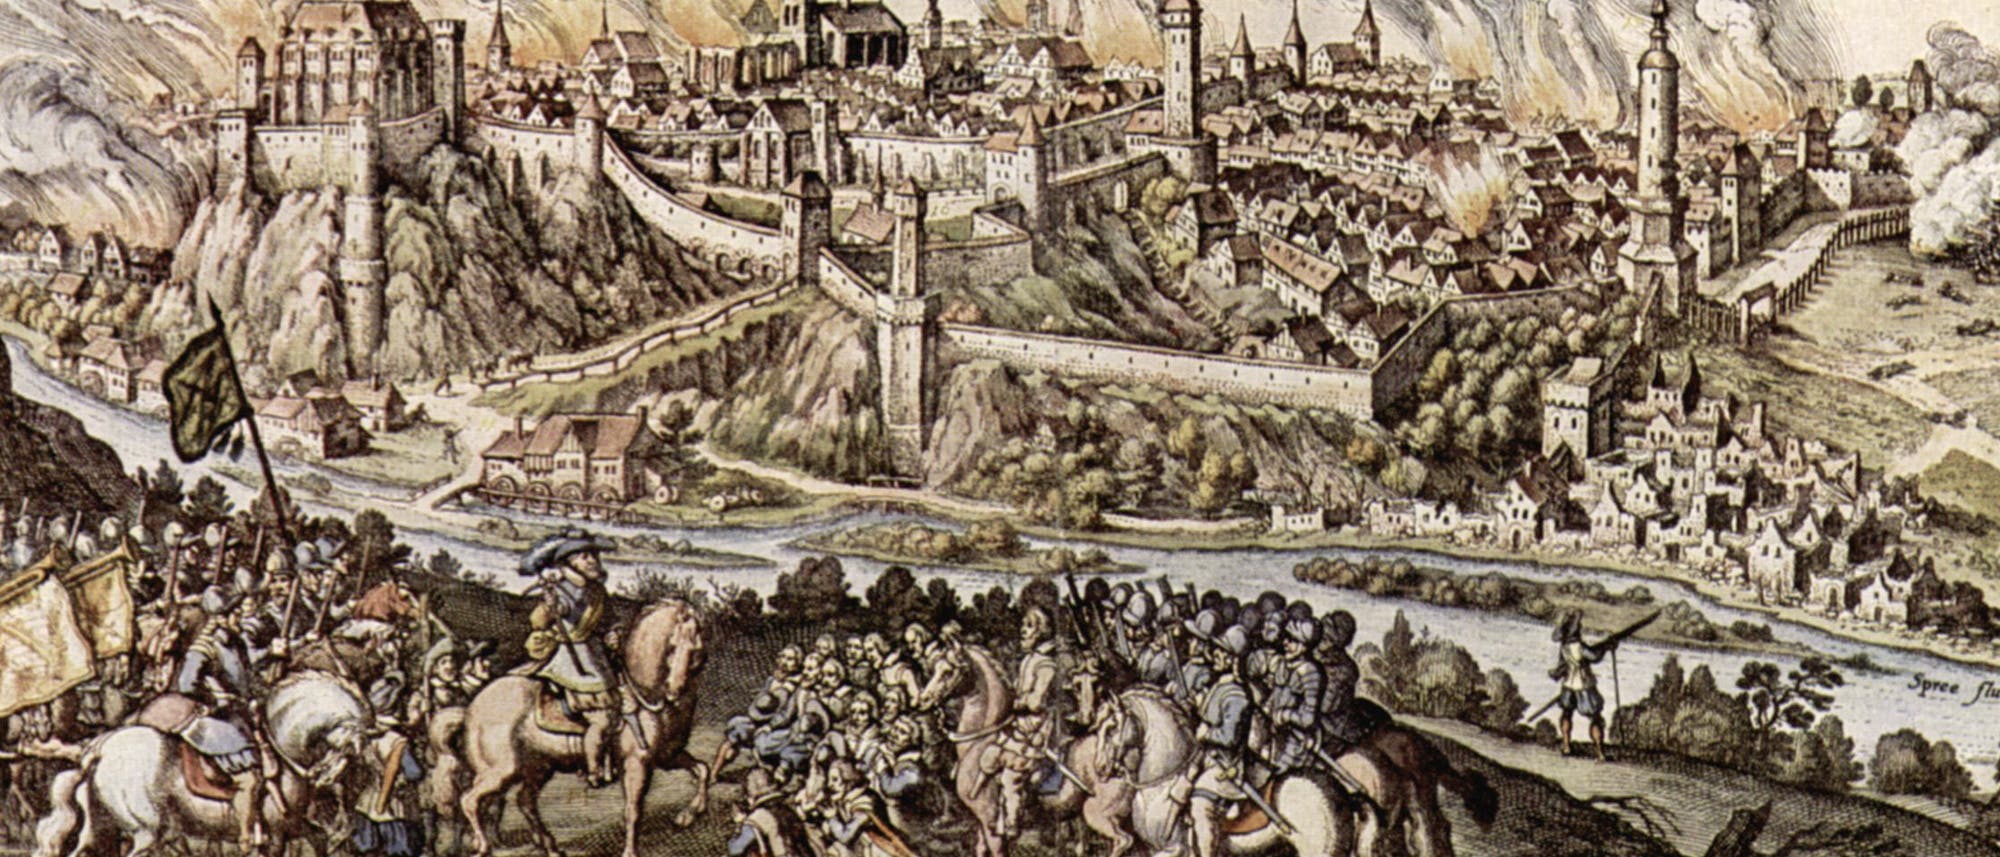 Es ist die historische Schlacht um die Belagerung von Bautzen im Dreißigjährigen Krieg zu sehen.